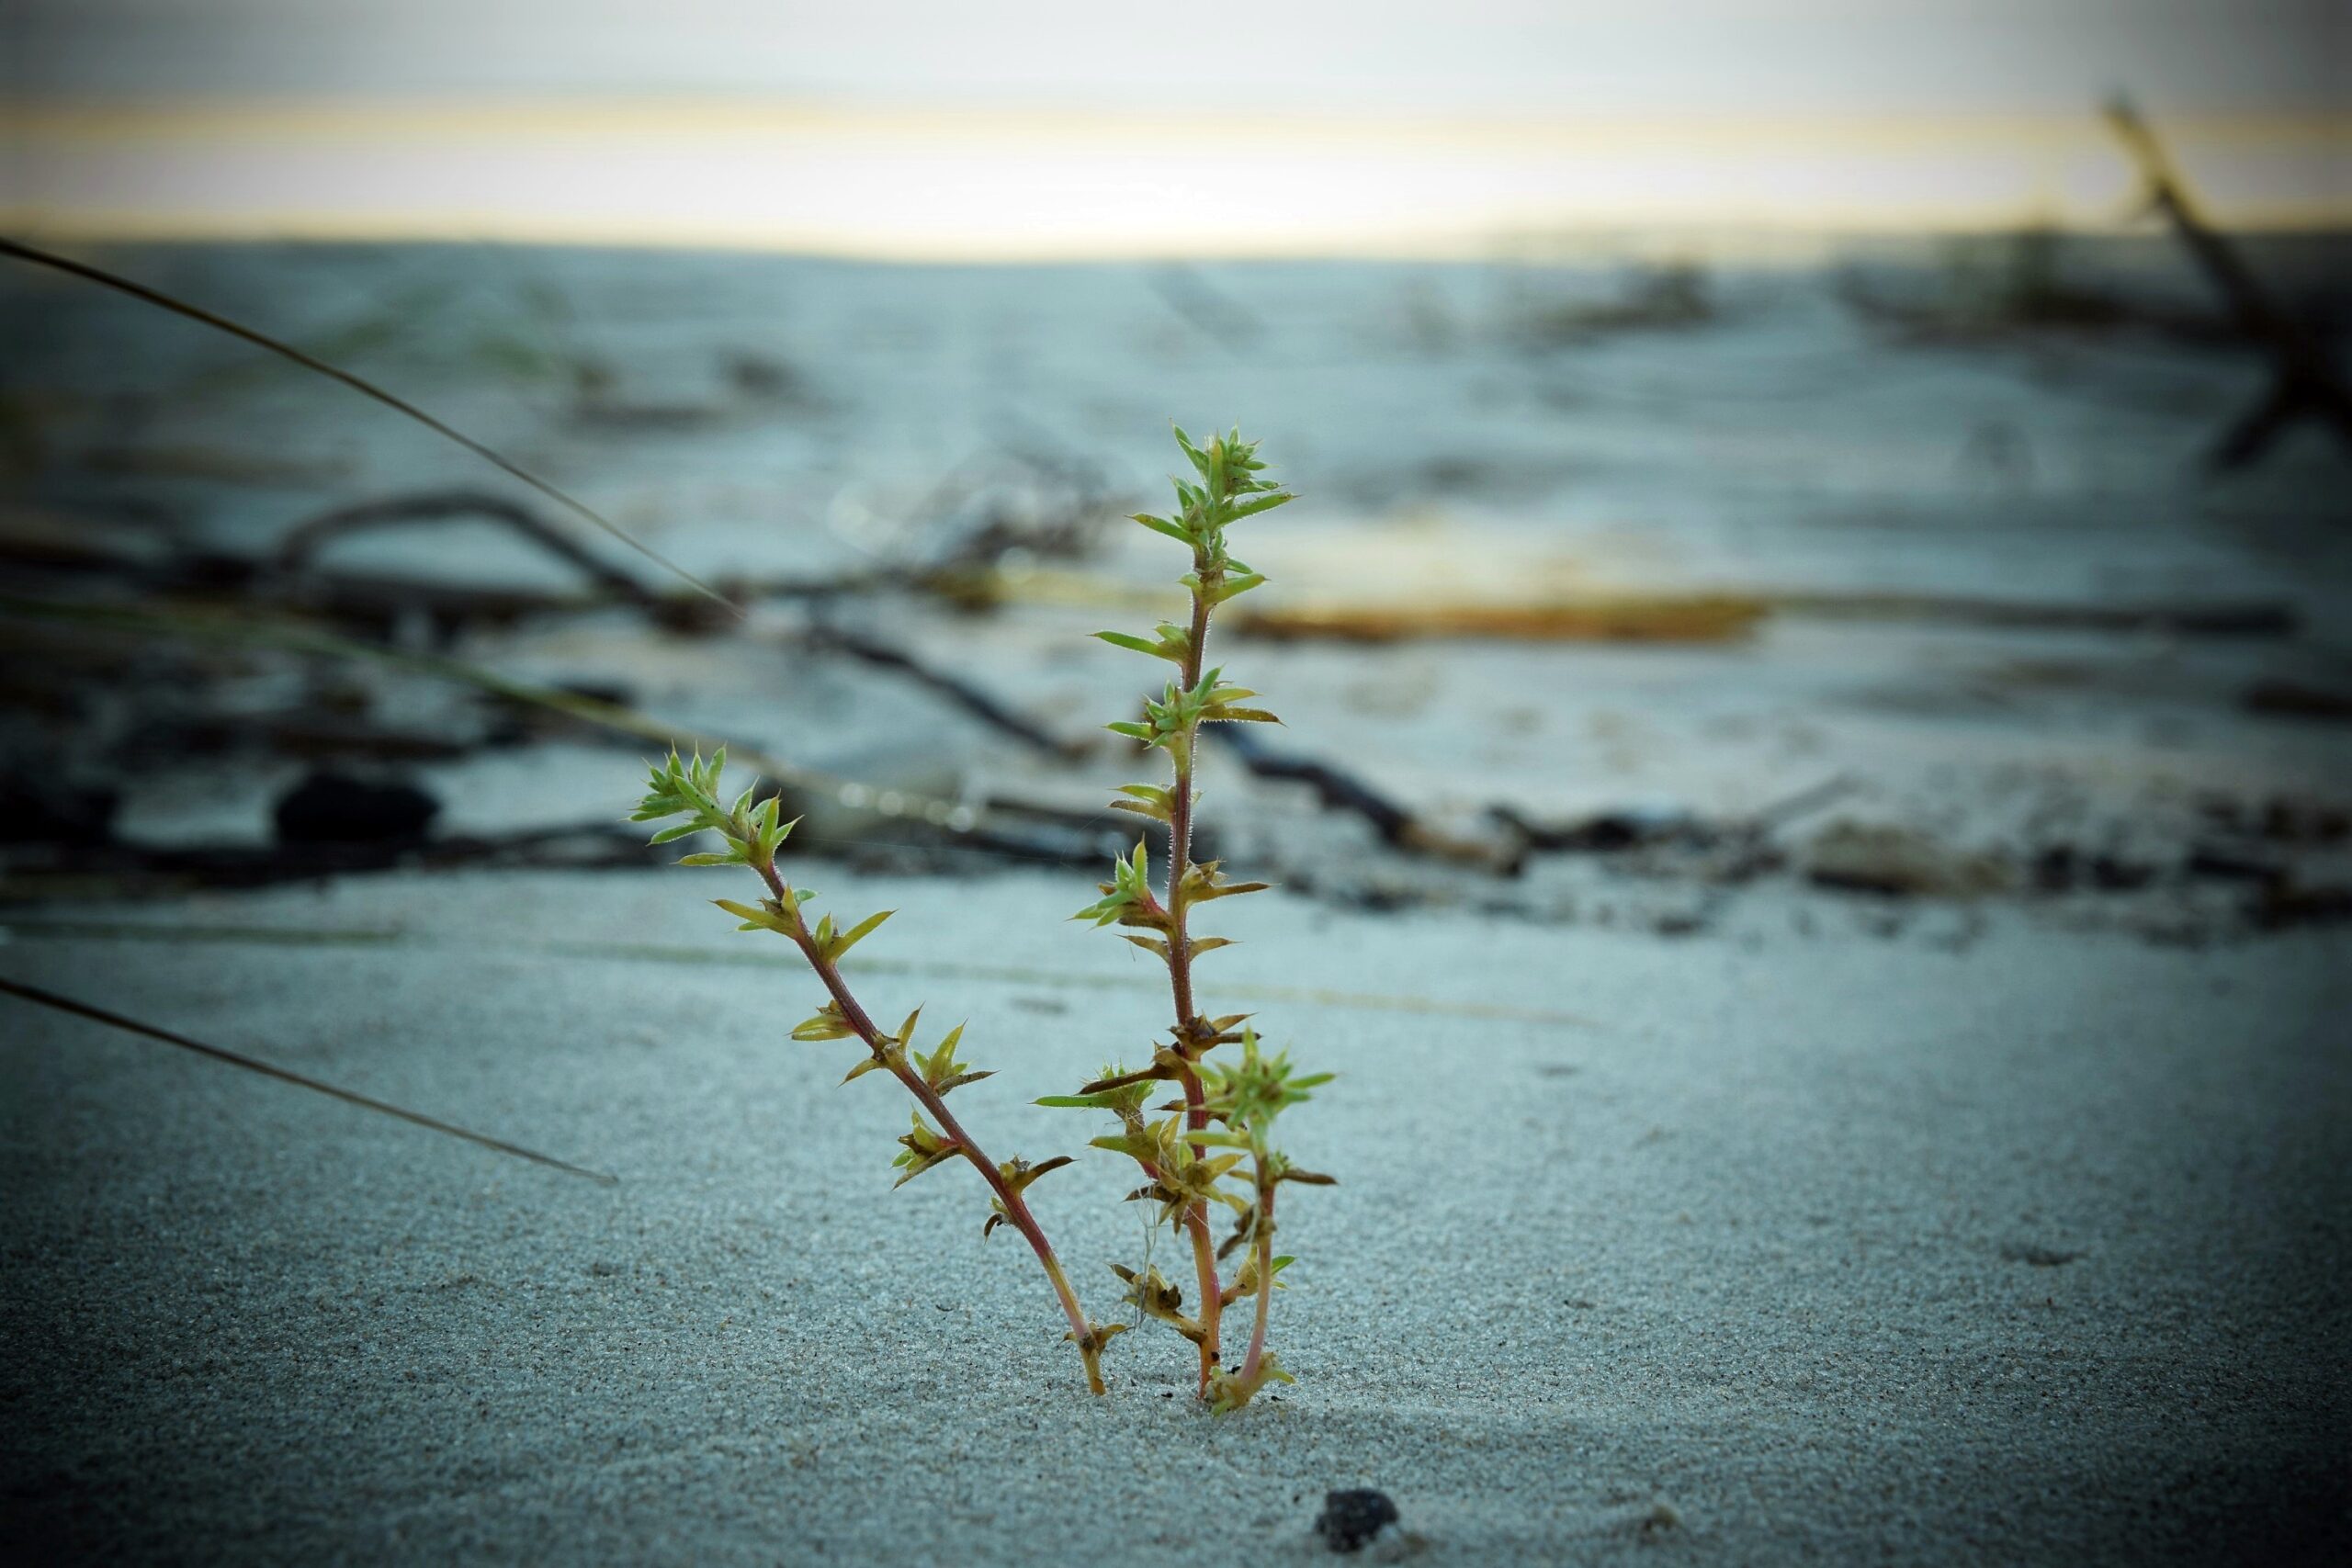 Zdjęcie solanki kolczystej wyrastającej z piasku plażowego.